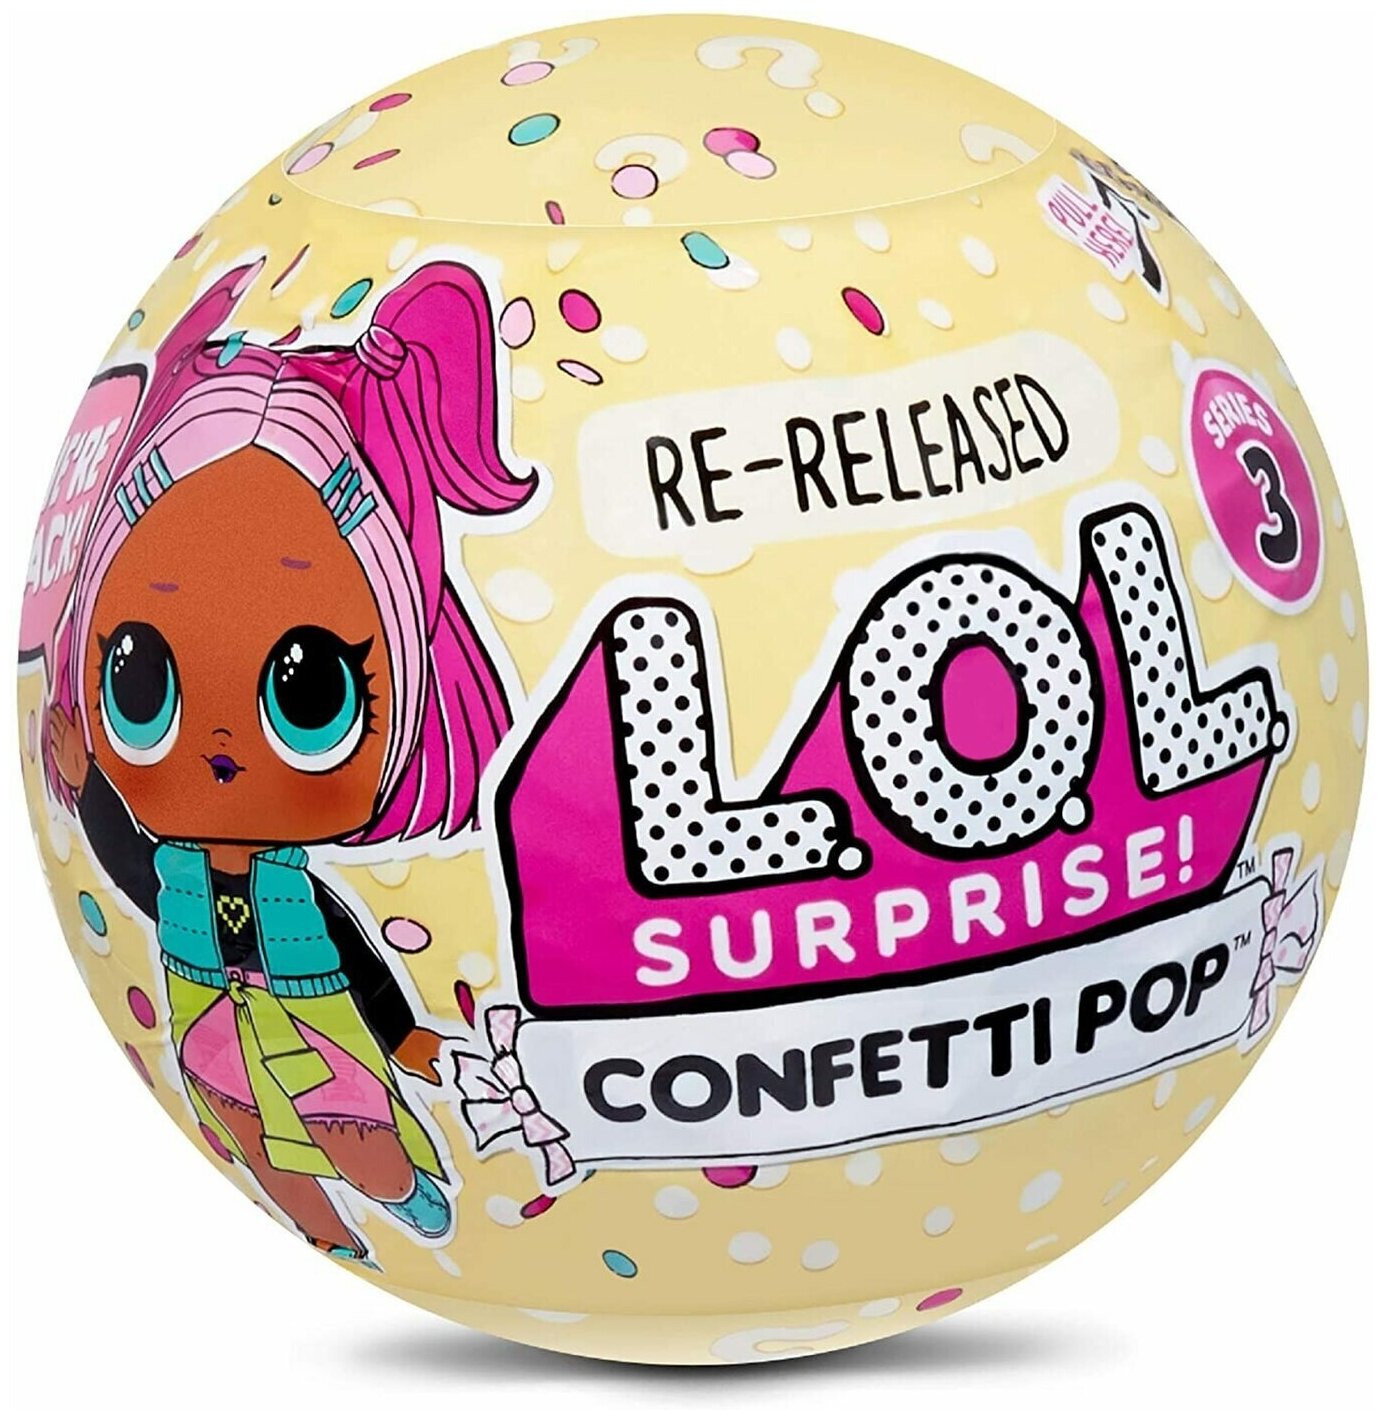 Кукла L. O. L. Surprise! LOL Confetti Pop Re-Released Series 3